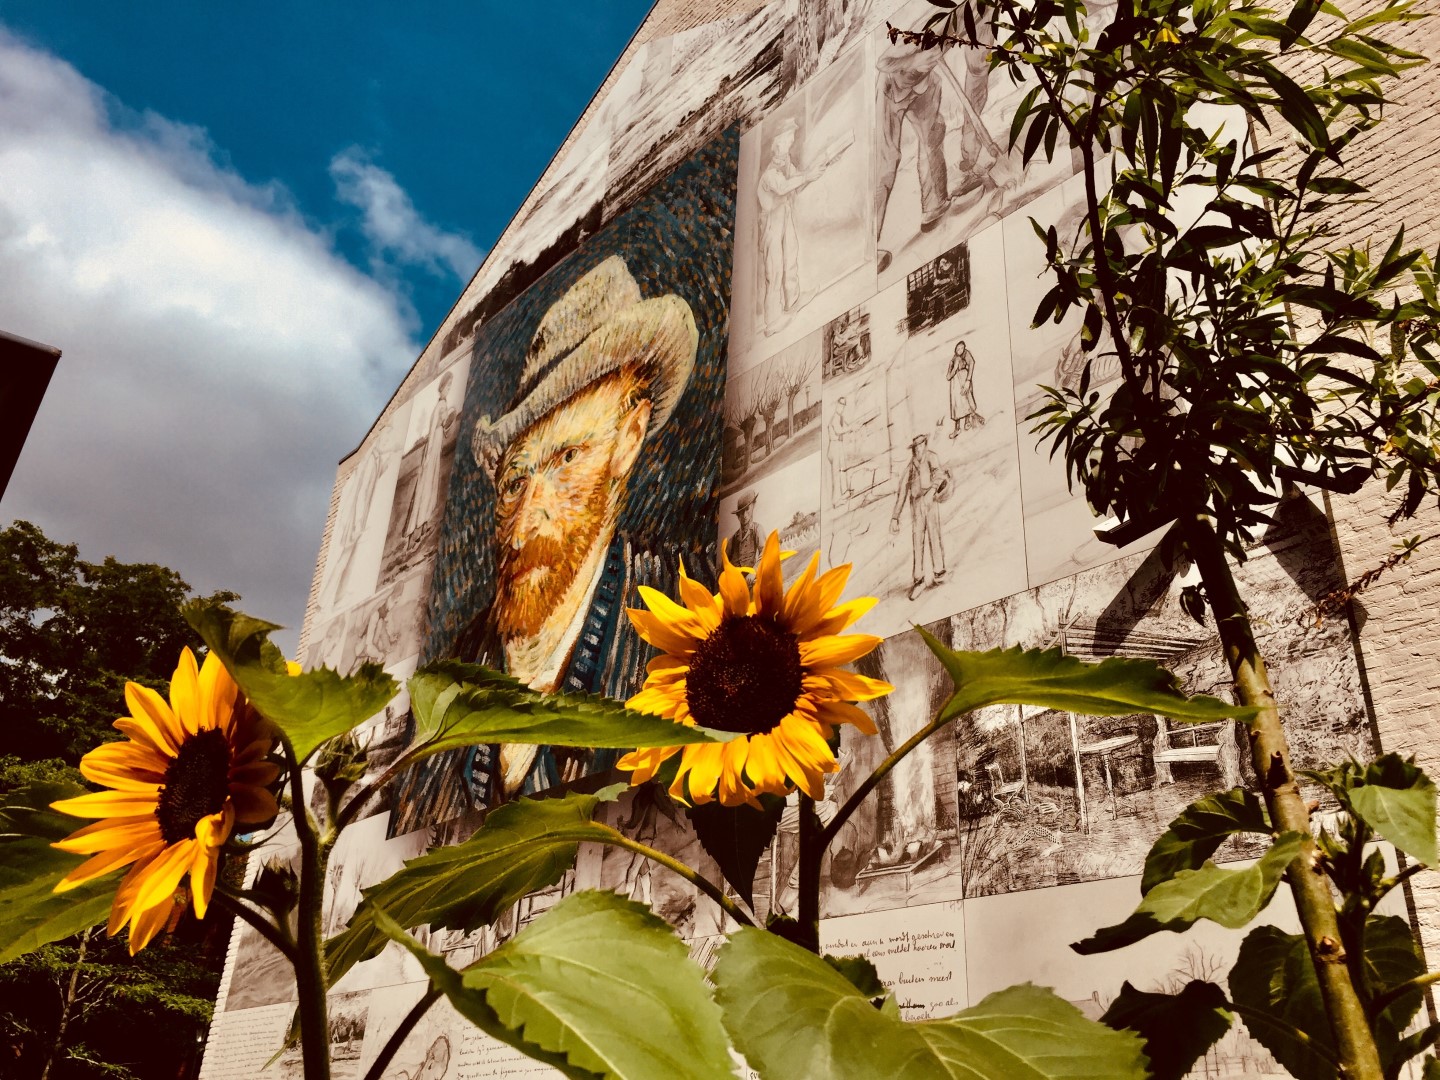 Niederlande: Interaktive Ausstellung zu Van Gogh in Noordbrabant 